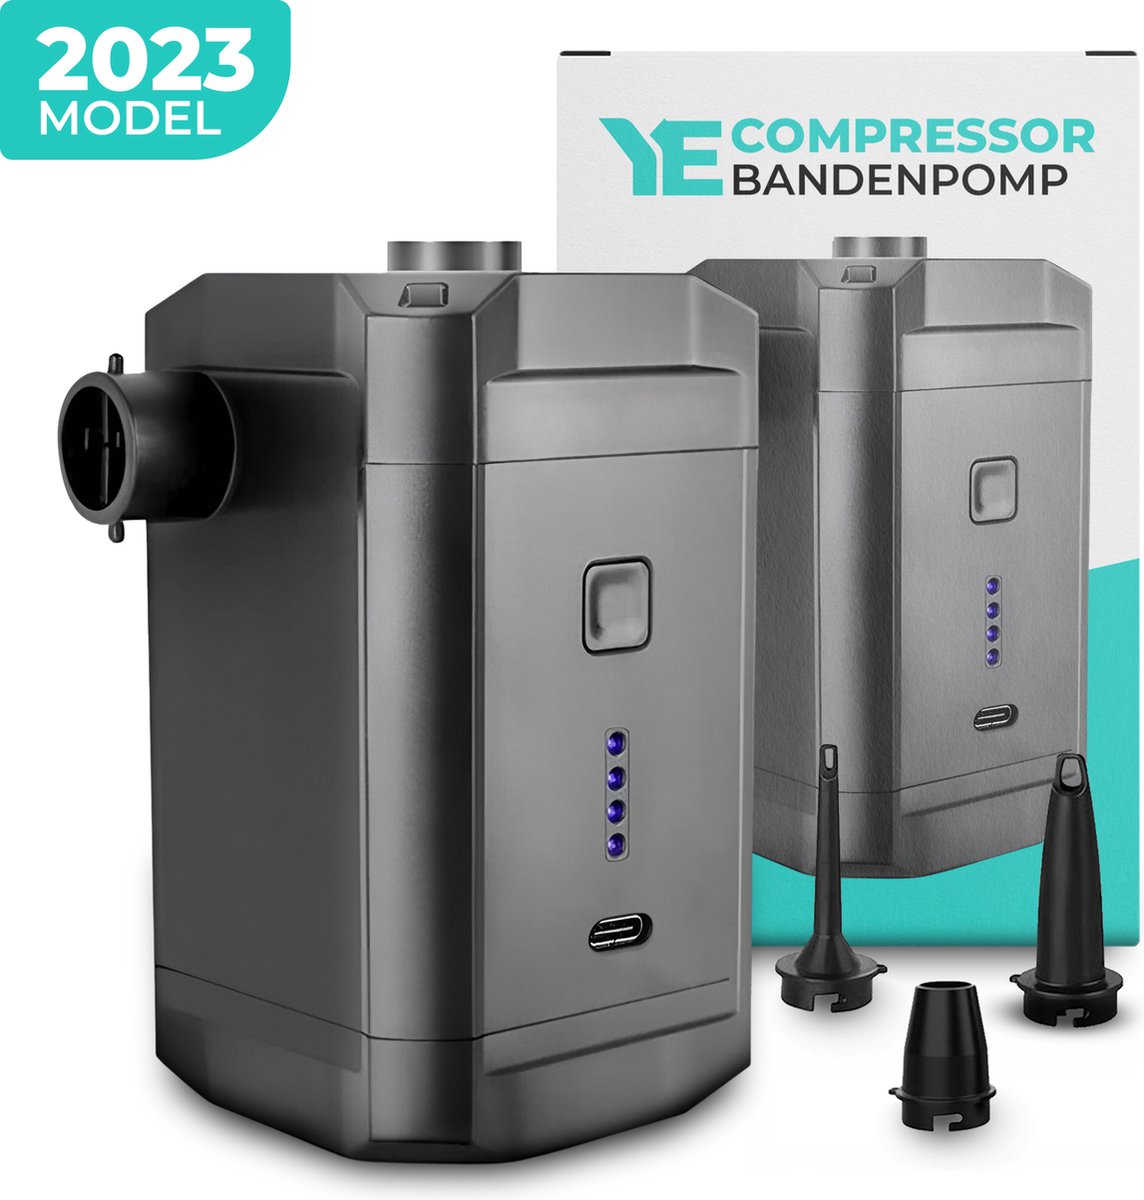 YE - Compressor Bandenpomp - 5000mAH - Elektrische Fietspomp - Luchtcompressor voor Auto, Scooter, Fiets, Bal en Luchtbed - Inclusief opzetstukken - PRO Model